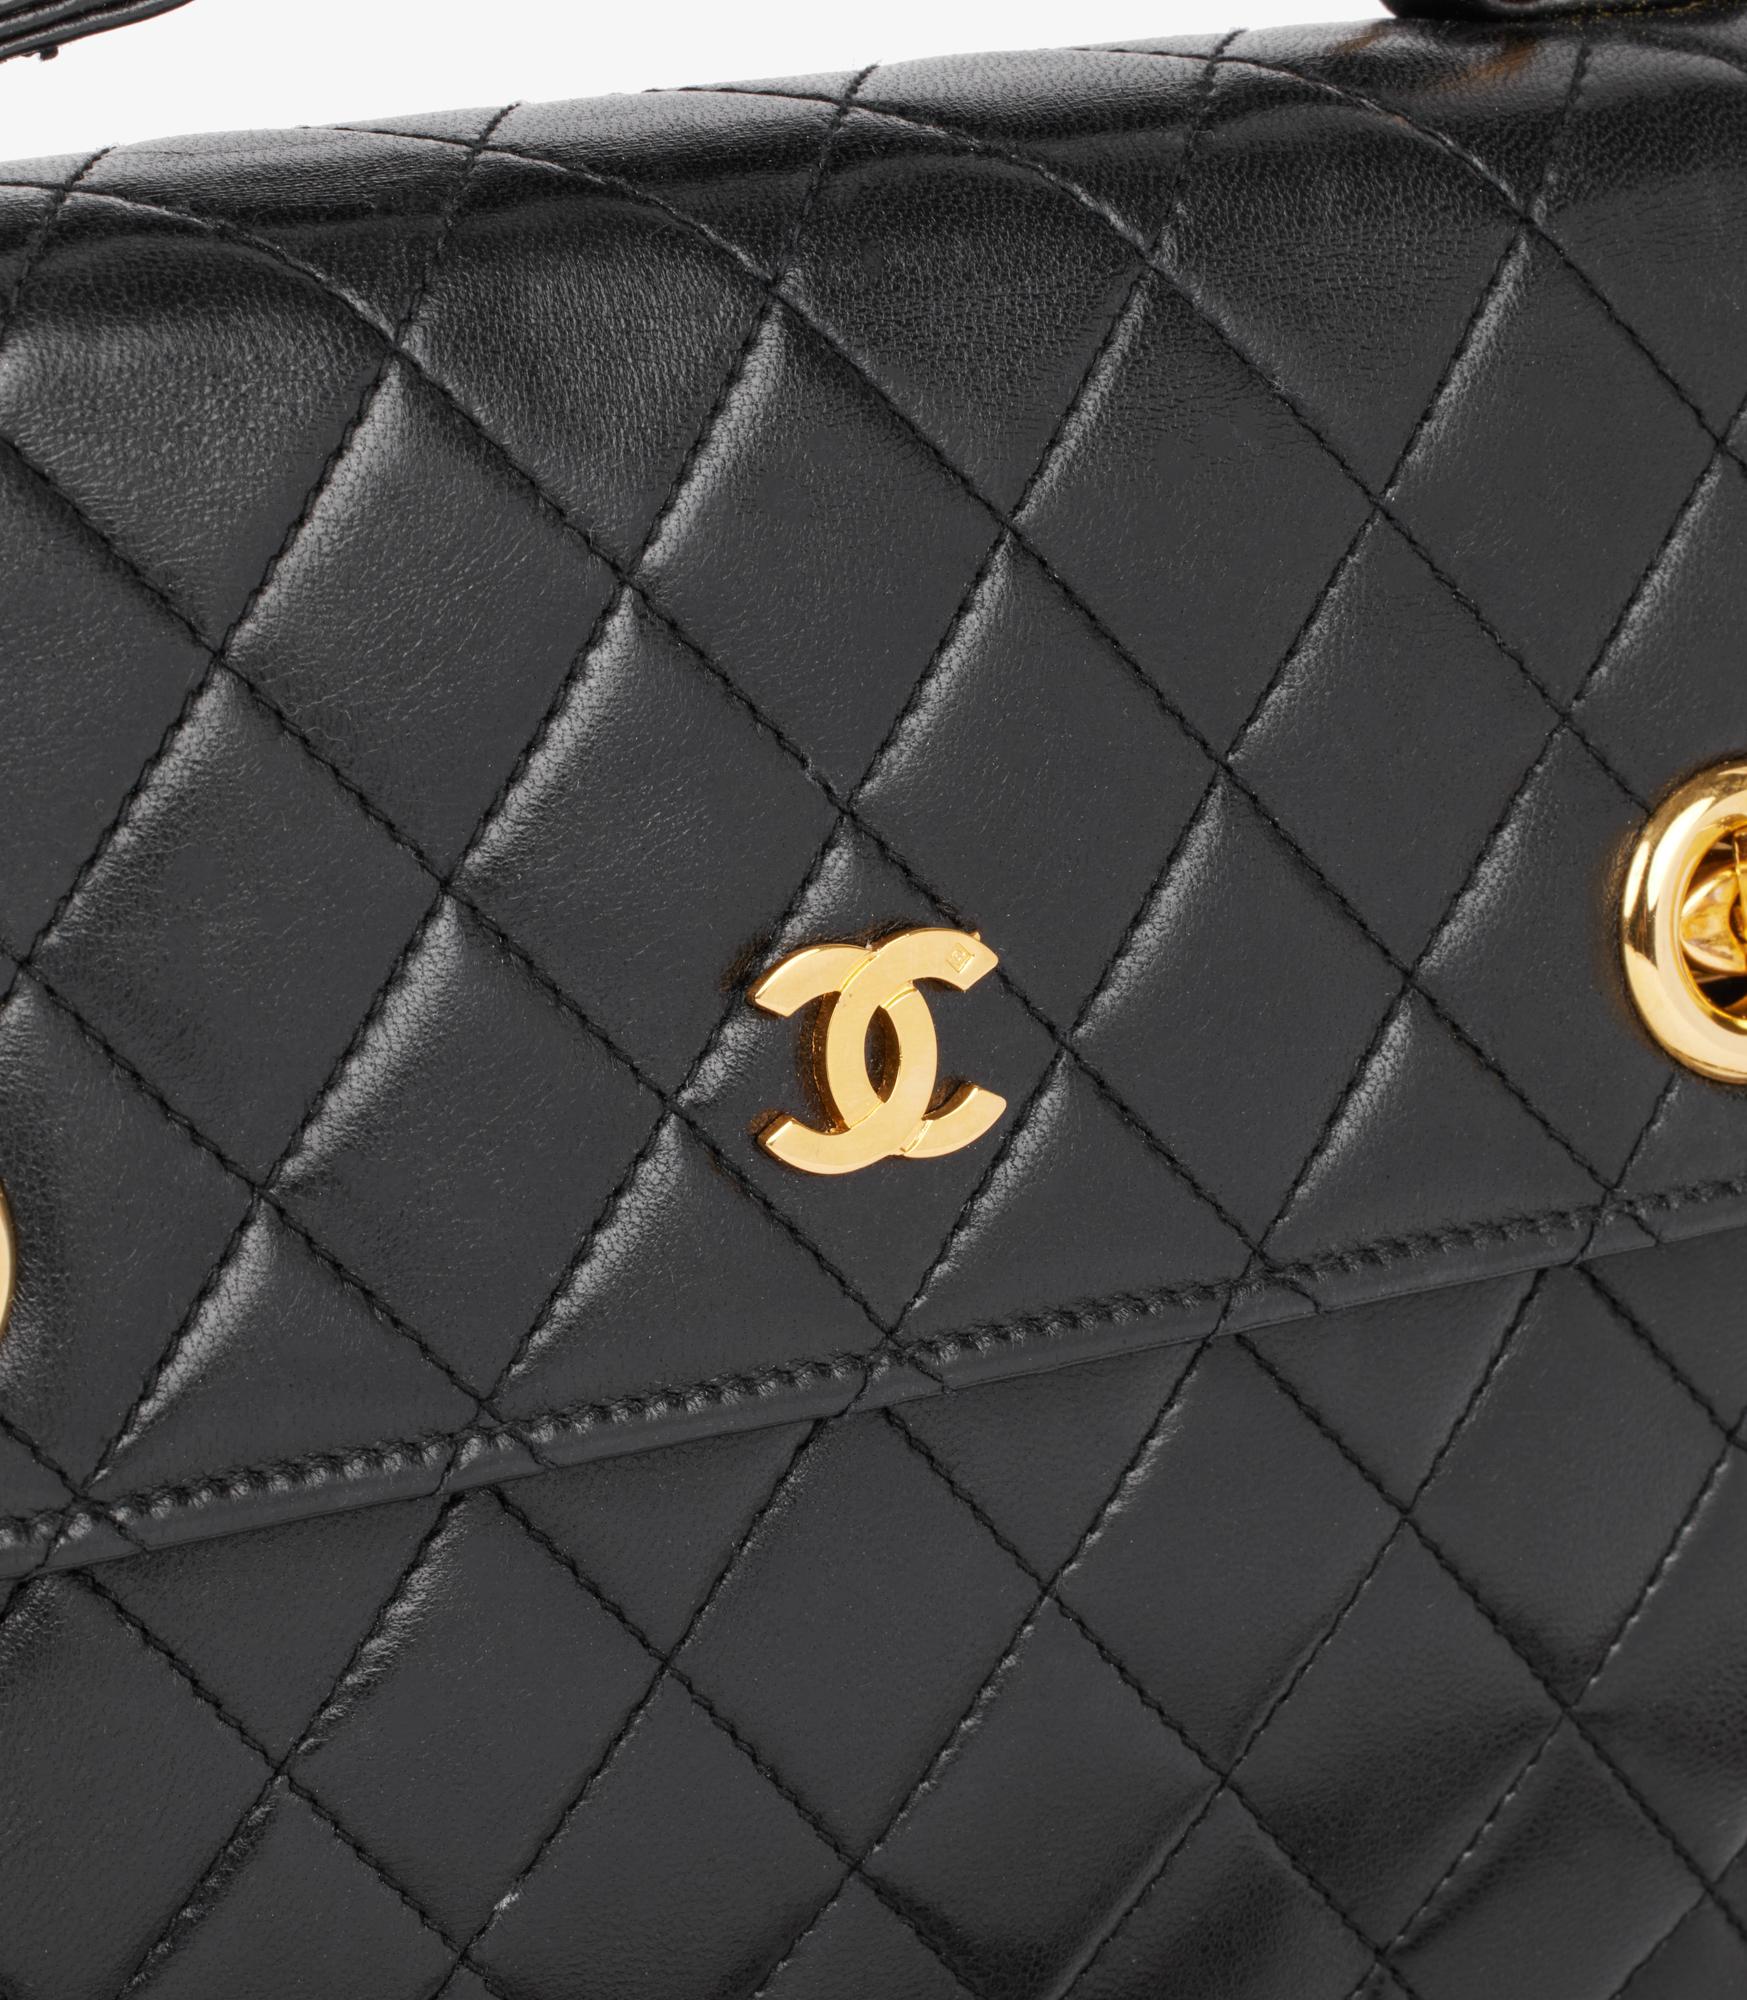 Chanel Schwarz Gestepptes Lammfell Vintage Klein Klassisch Einzelne Klappe Tasche Mit Top Handle

Marke- Chanel
Modell- Kleine klassische Tasche mit einfacher Klappe
Produkttyp- Schulter, Henkel oben
Seriennummer - 377617
Alter- Circa 1988
Begleitet